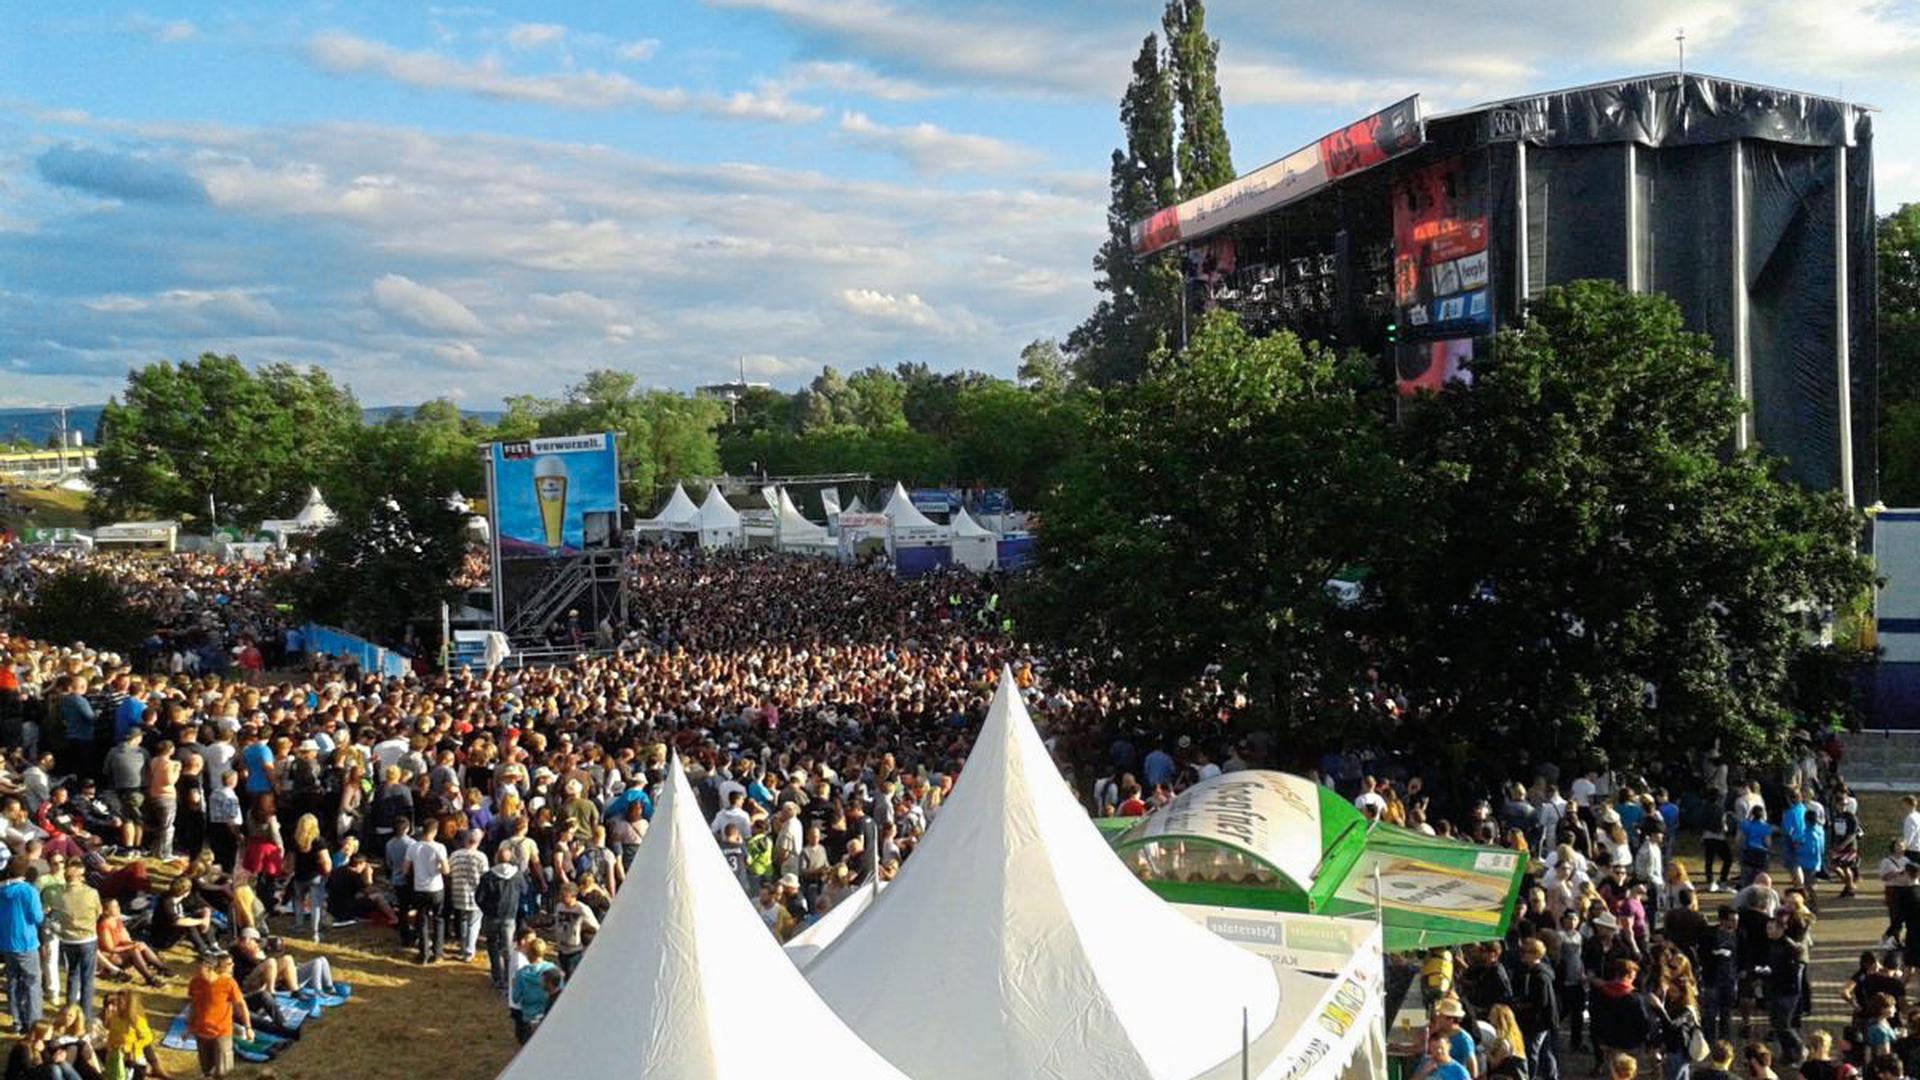 "Das Fest" in der Günter-Klotz-Anlage lockt Jahr für Jahr viele Festival-Fans an.